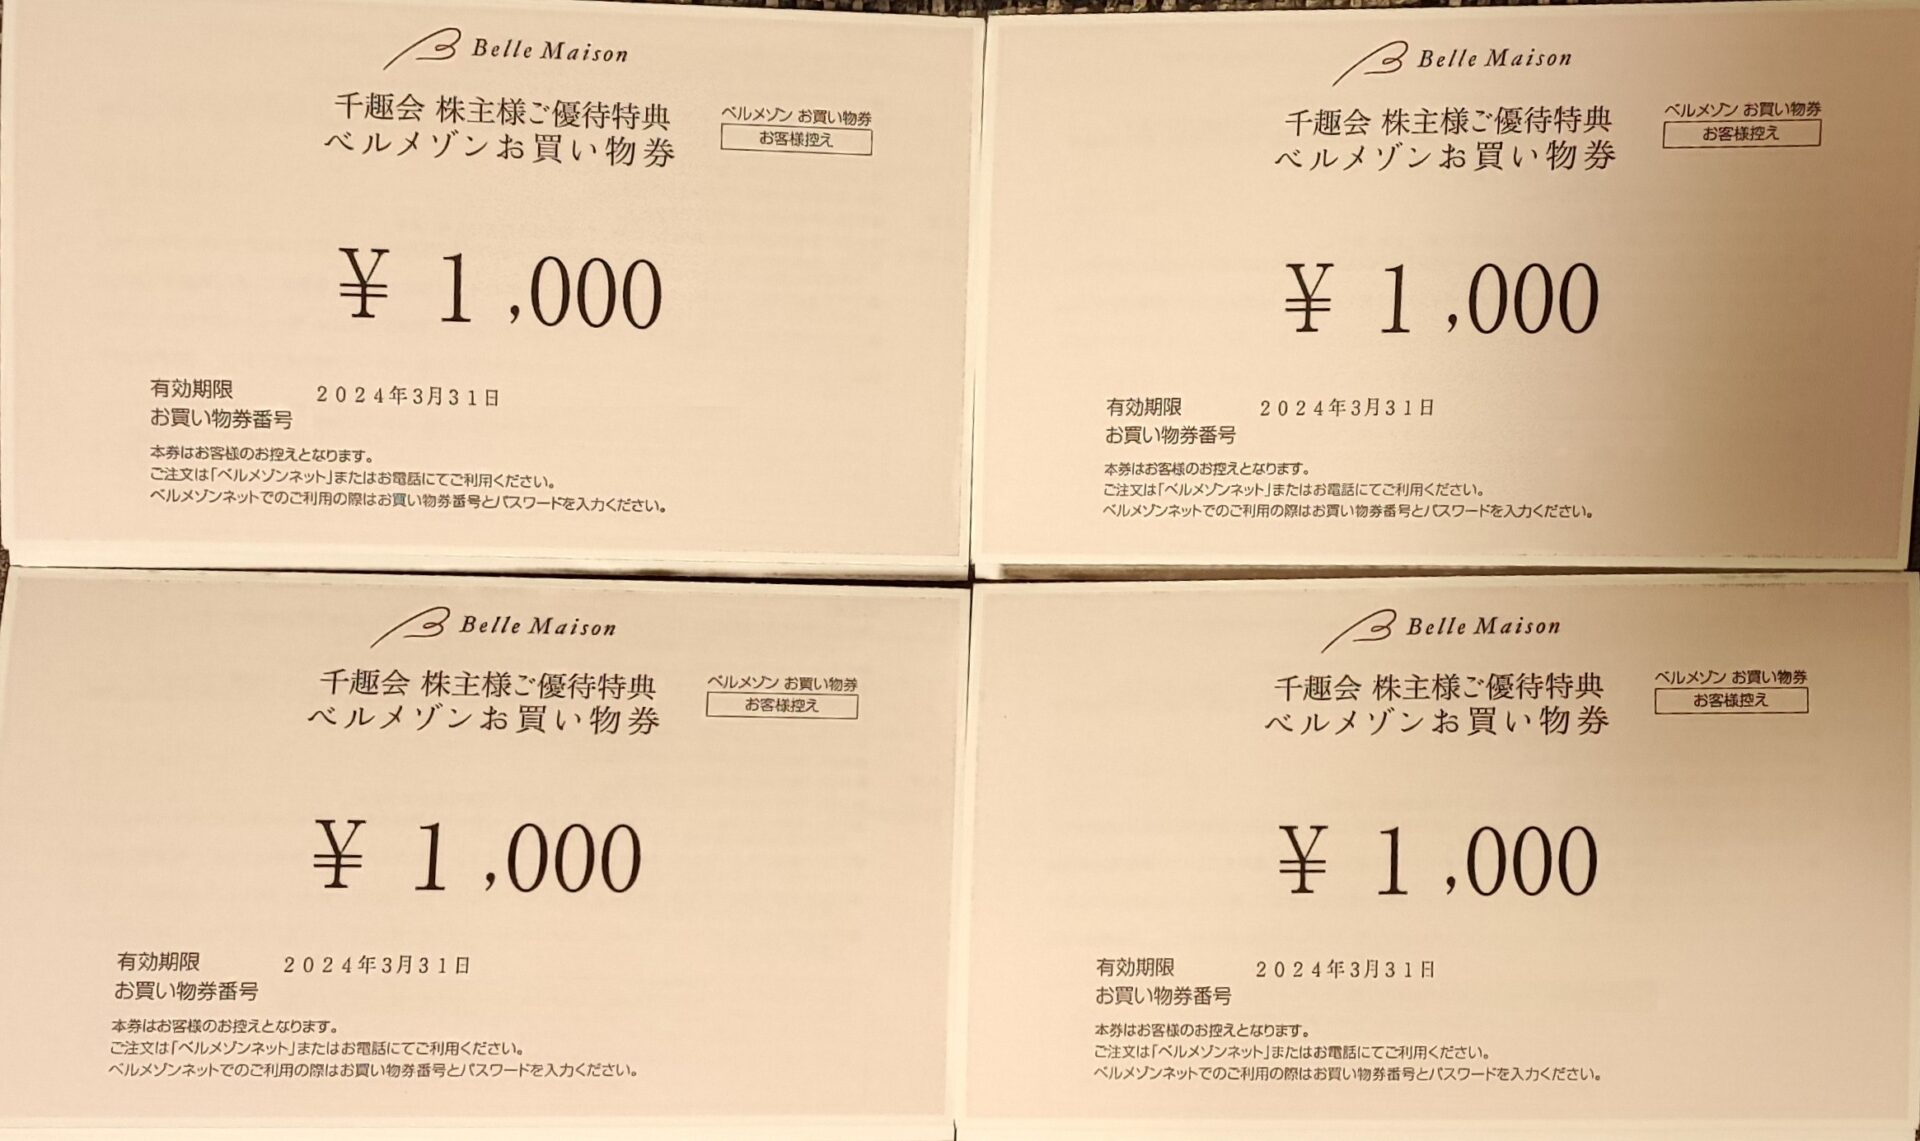 ベルメゾン 千趣会 株主優待 36000円分ショッピング